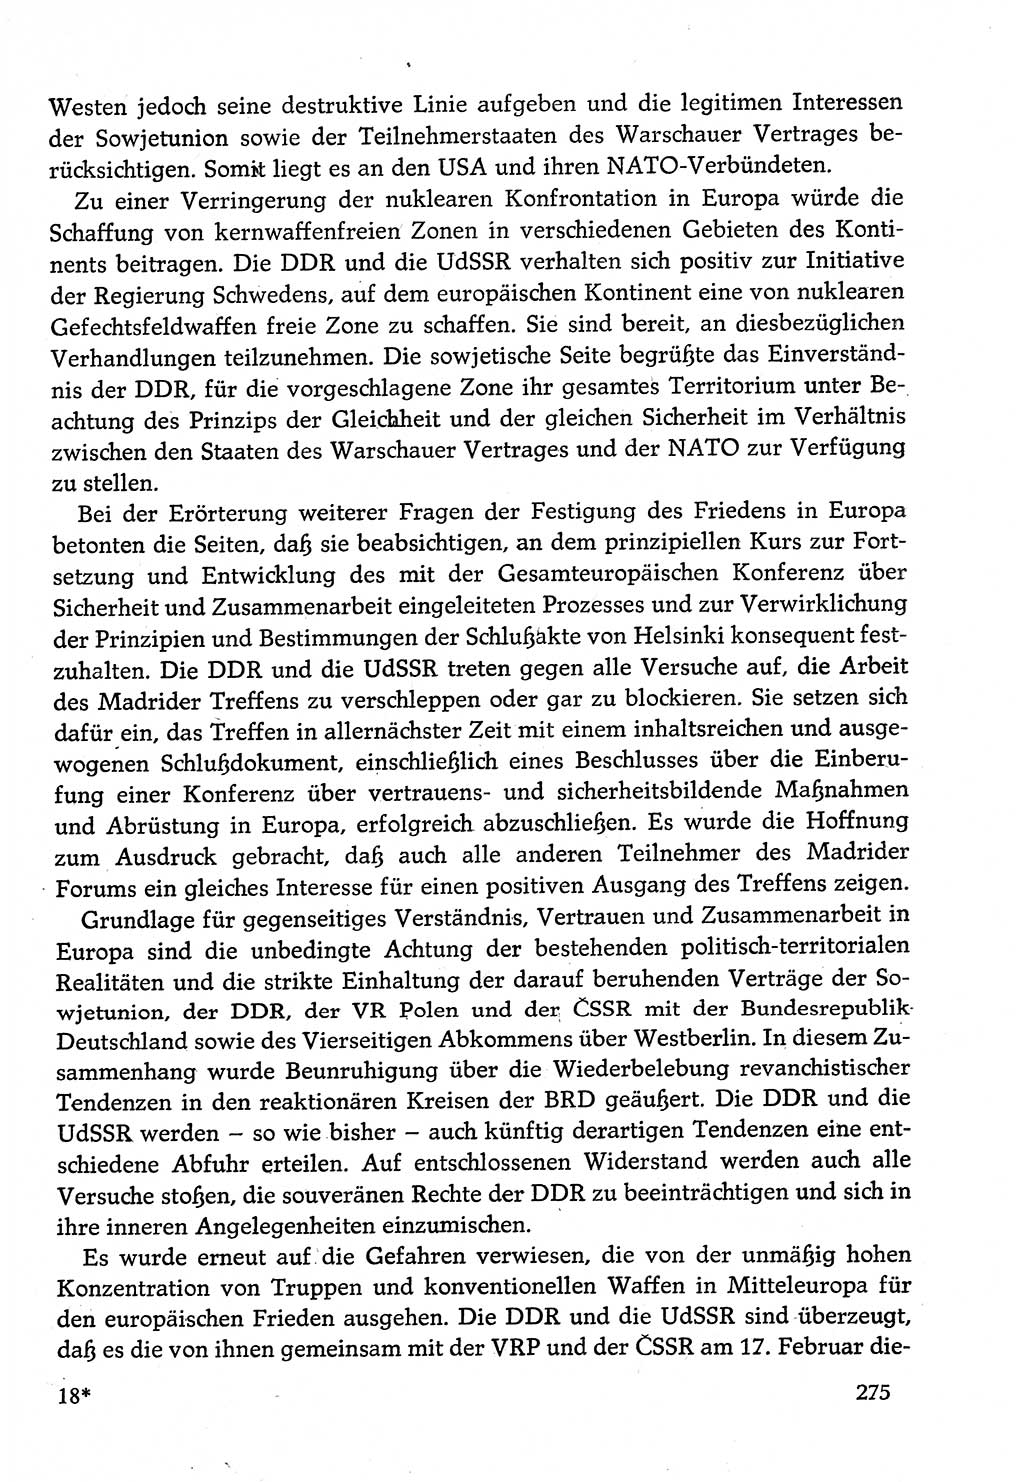 Dokumente der Sozialistischen Einheitspartei Deutschlands (SED) [Deutsche Demokratische Republik (DDR)] 1982-1983, Seite 275 (Dok. SED DDR 1982-1983, S. 275)